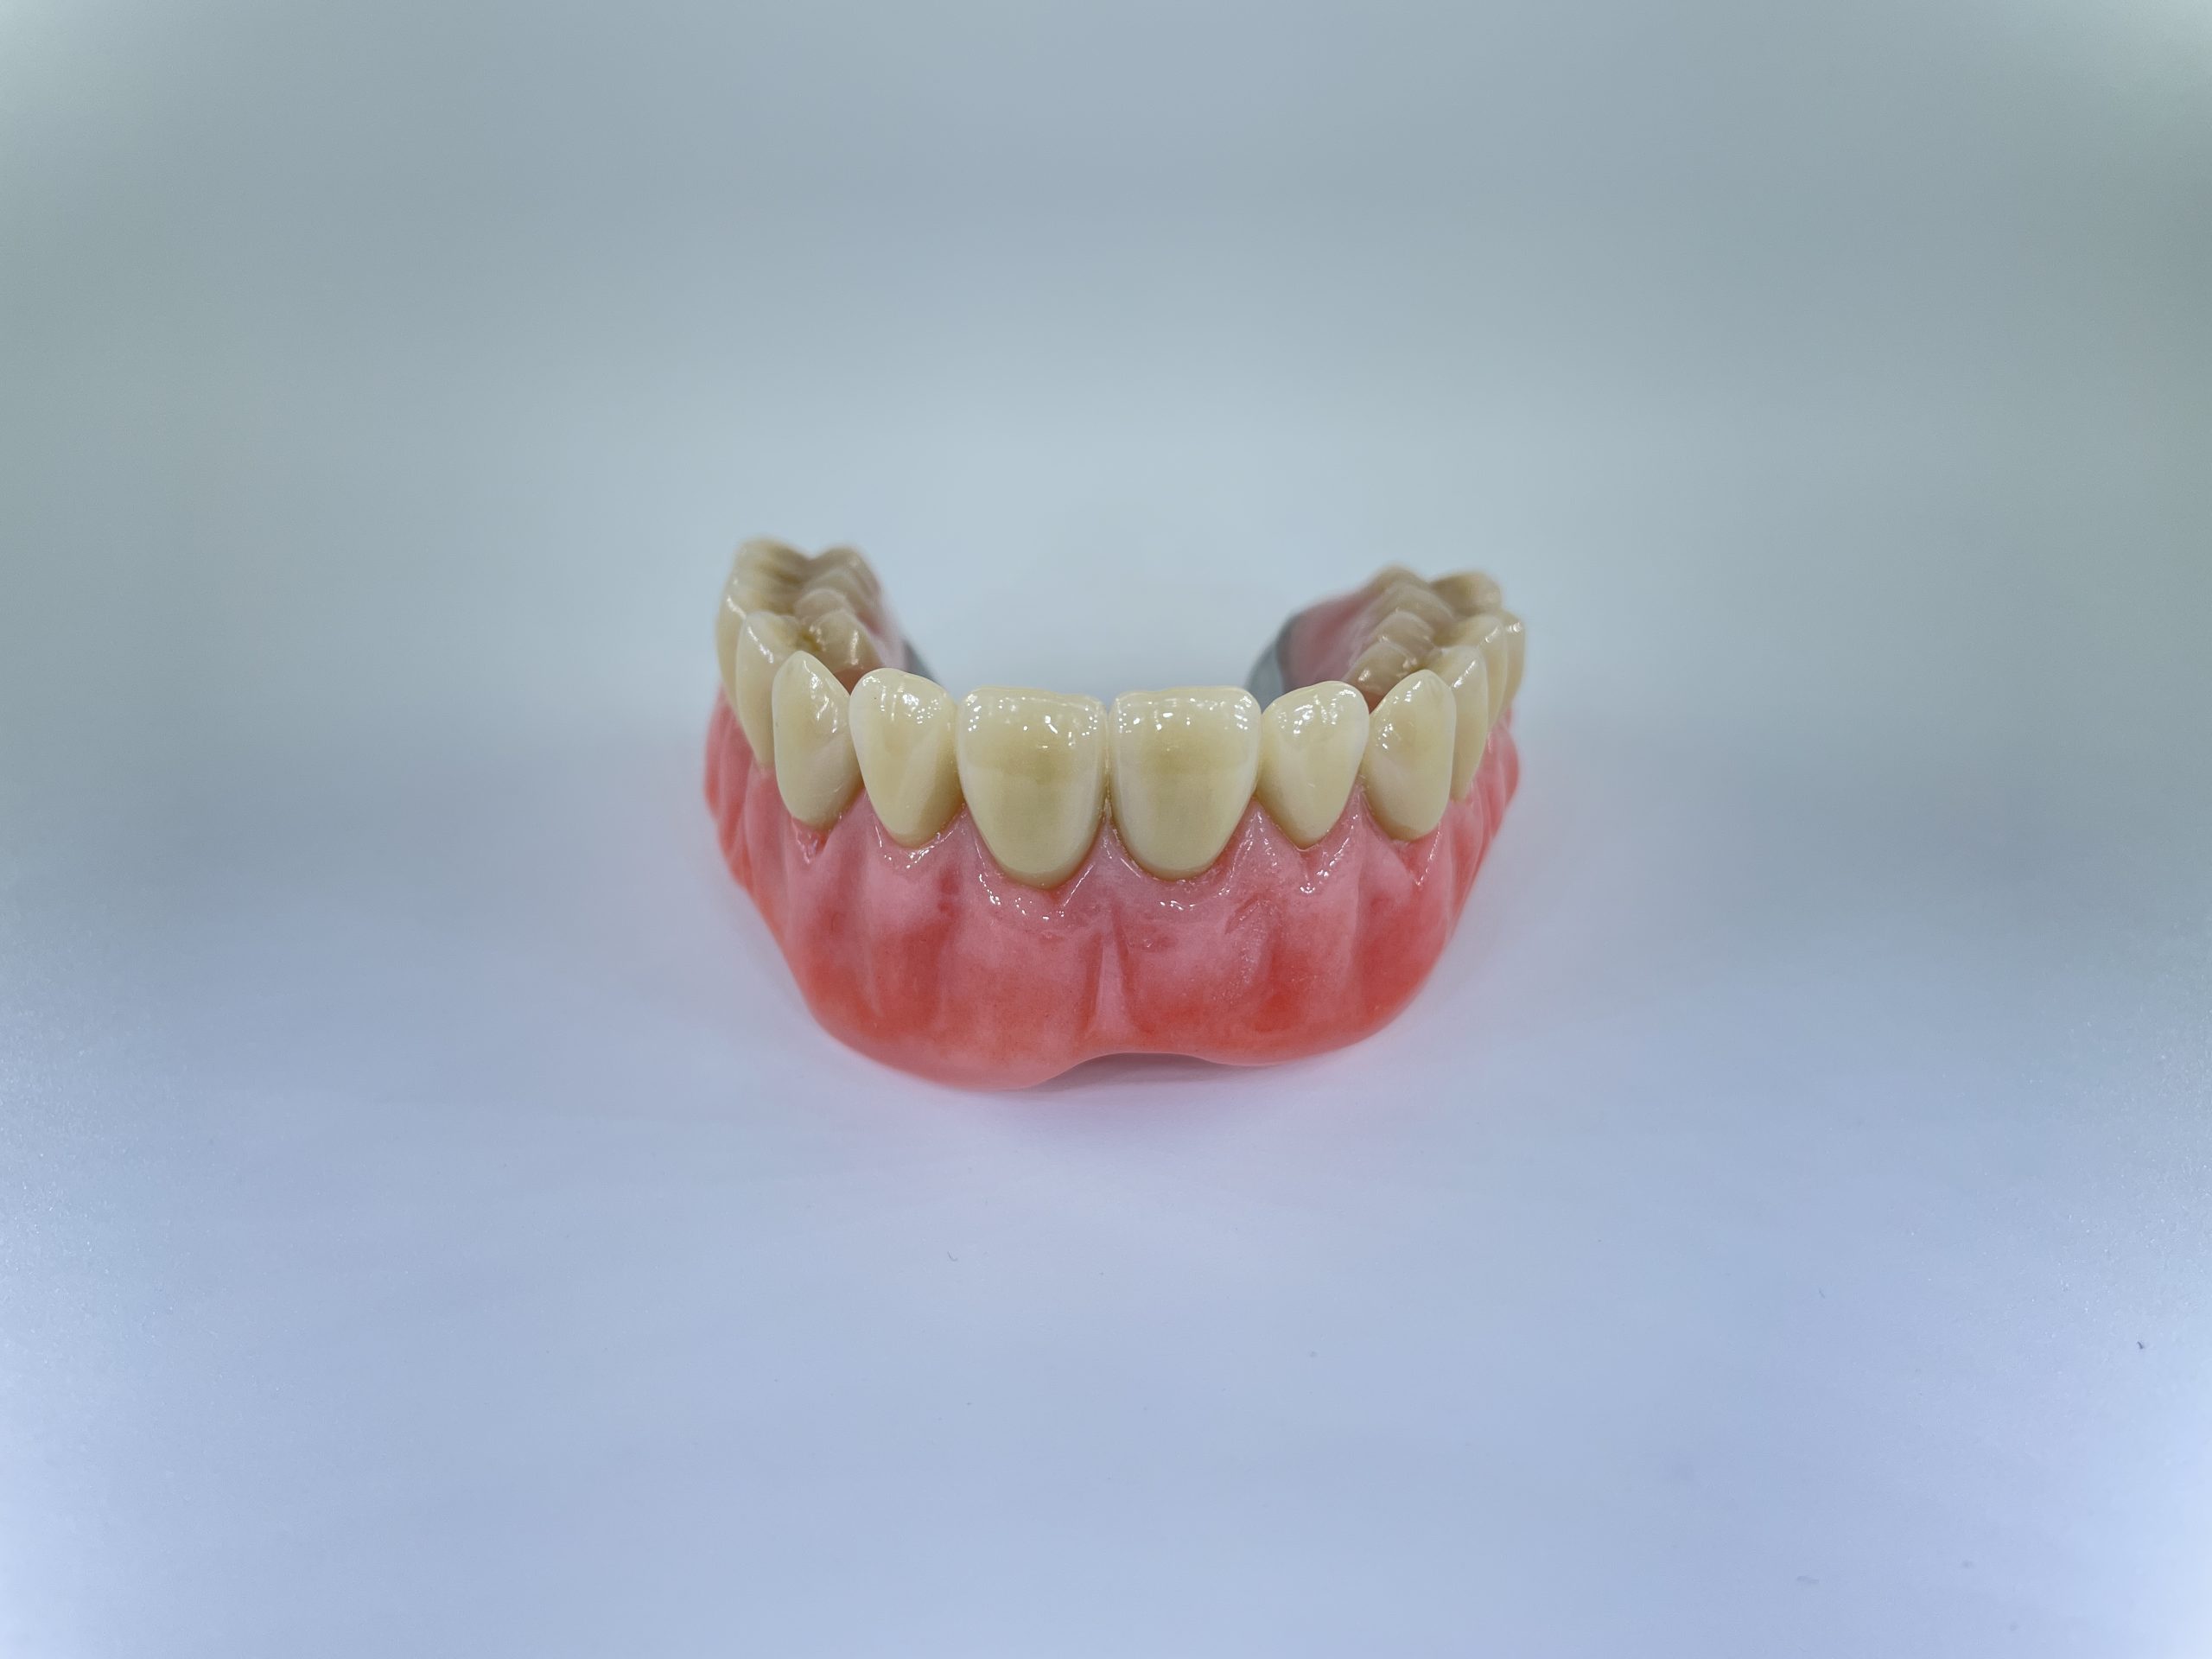 hybrid tandprotese til overmund omvendt foran Resultater af færdigeproduceret tandproteser